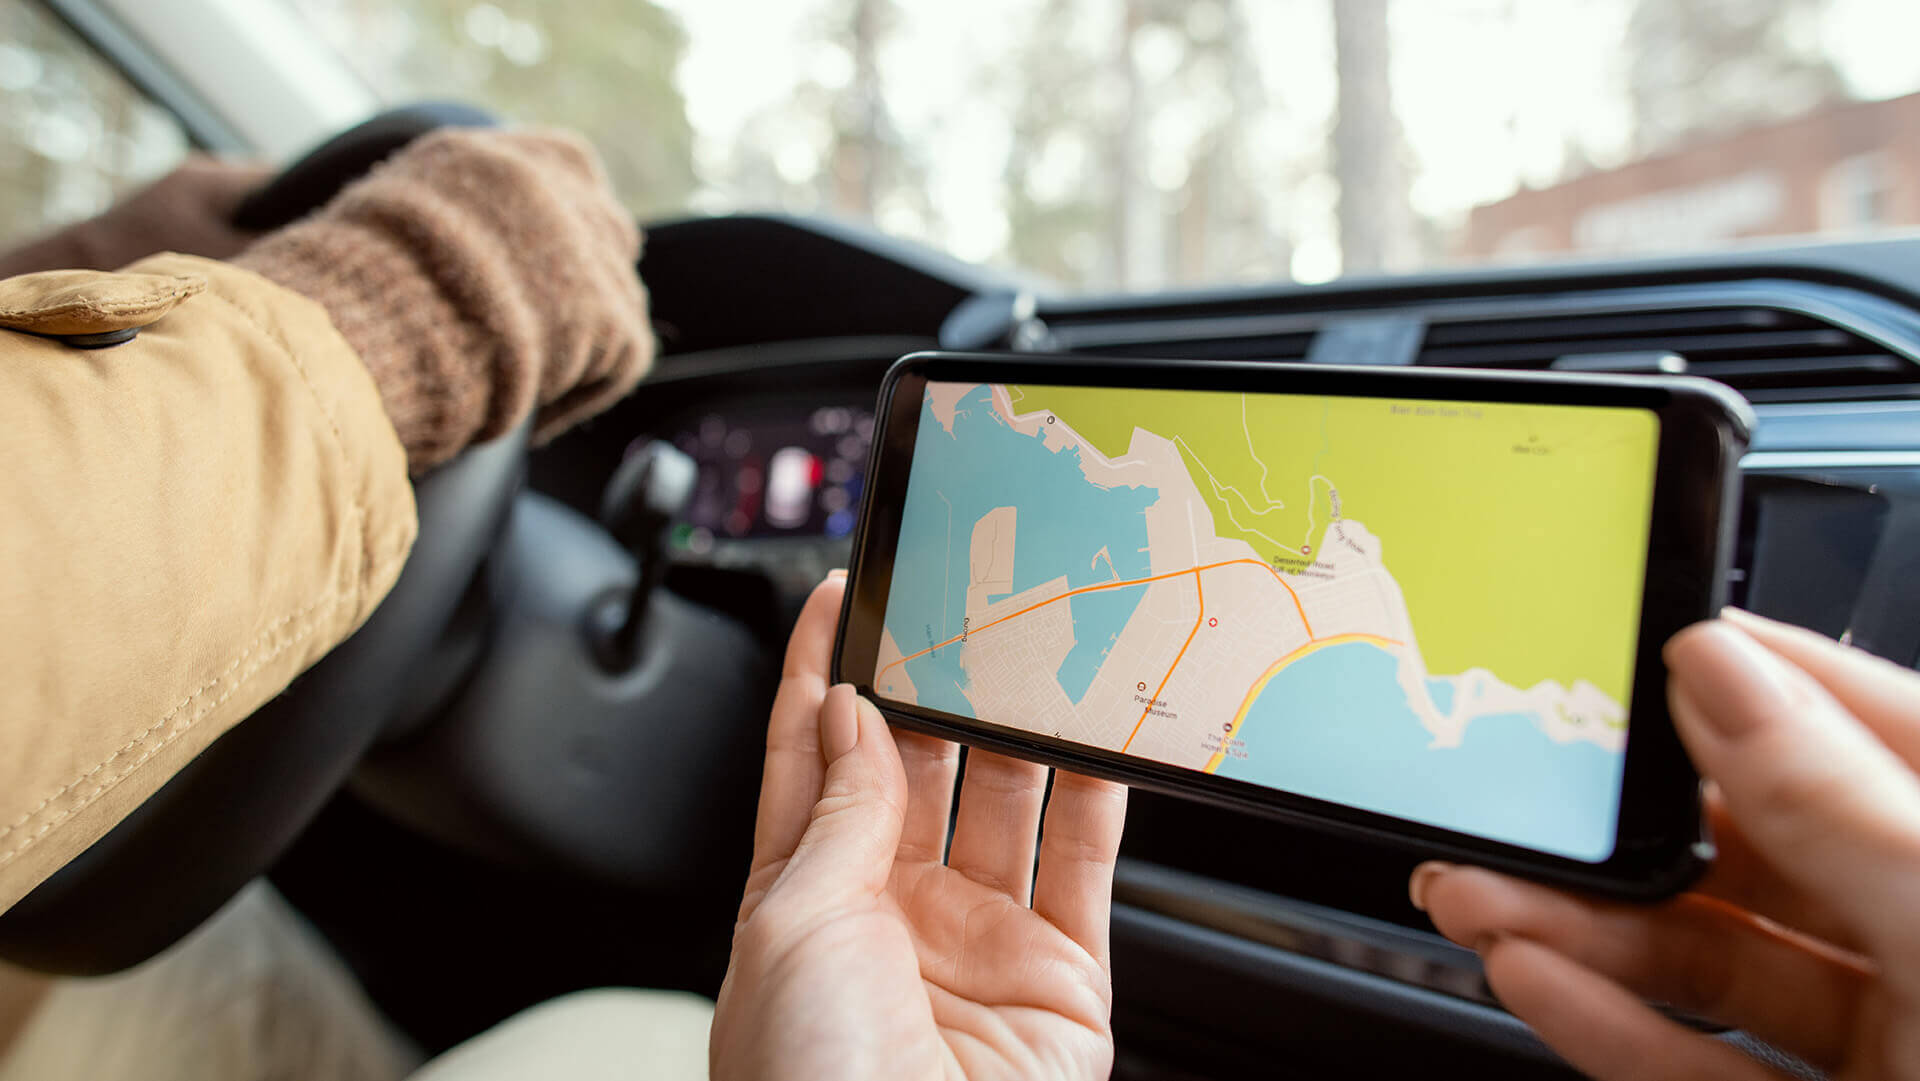 13 najlepszych aplikacji na Androida, ranking, czyli kobieta trzymająca telefon komórkowy z mapą i pokazująca kierowcy gdzie jechać